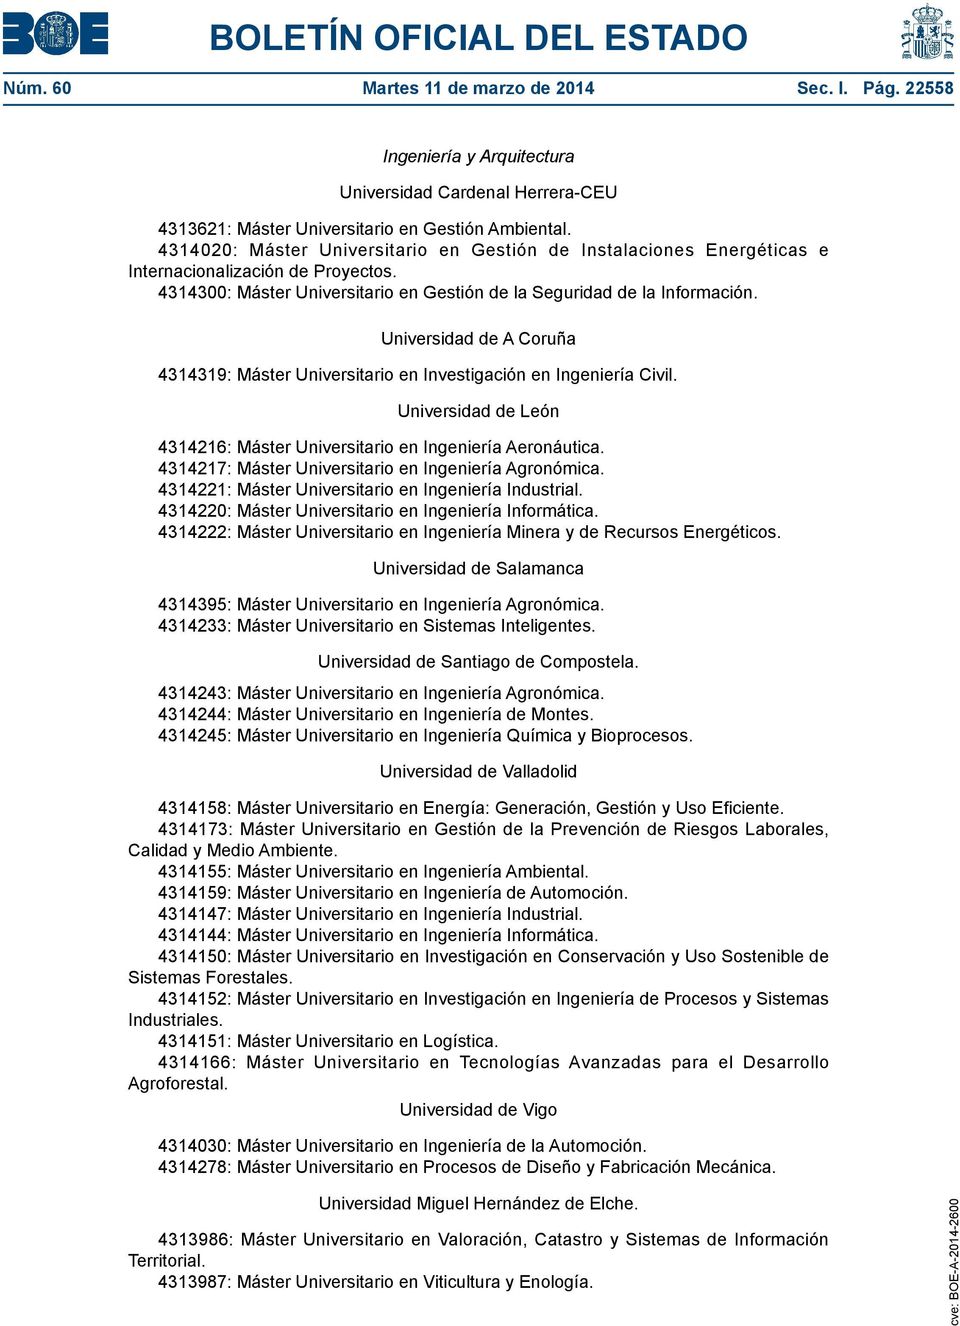 Universidad de A Coruña 4314319: Máster Universitario en Investigación en Ingeniería Civil. 4314216: Máster Universitario en Ingeniería Aeronáutica.